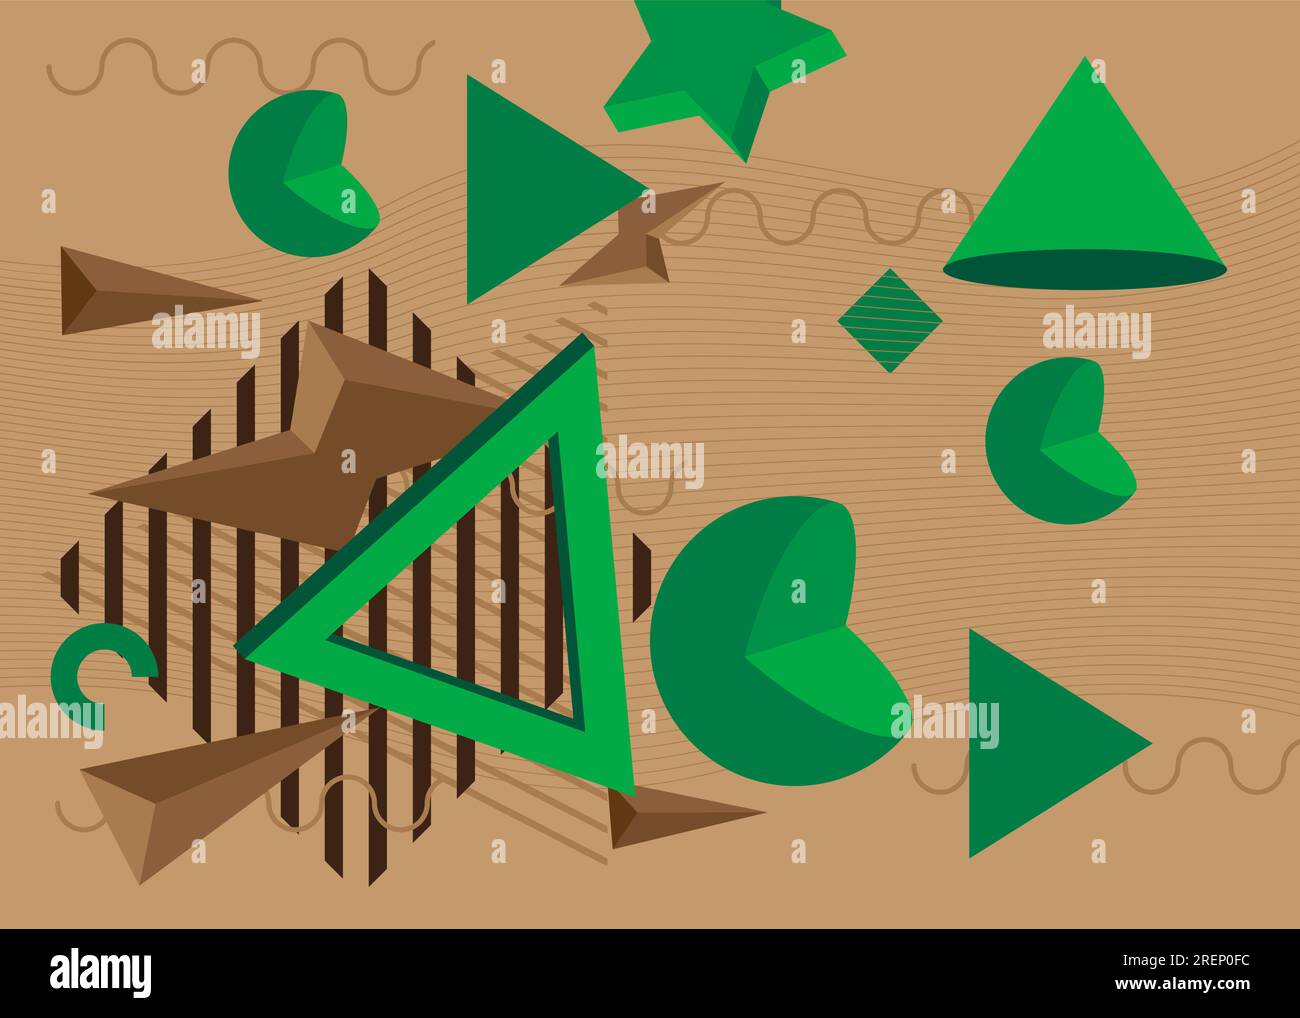 Bannière d'affiche à thème géométrique vintage marron et vert. Modèle de formes abstraites rétro pour la conception de couverture. Arrière-plan minimal graphique géométrique coloré Illustration de Vecteur